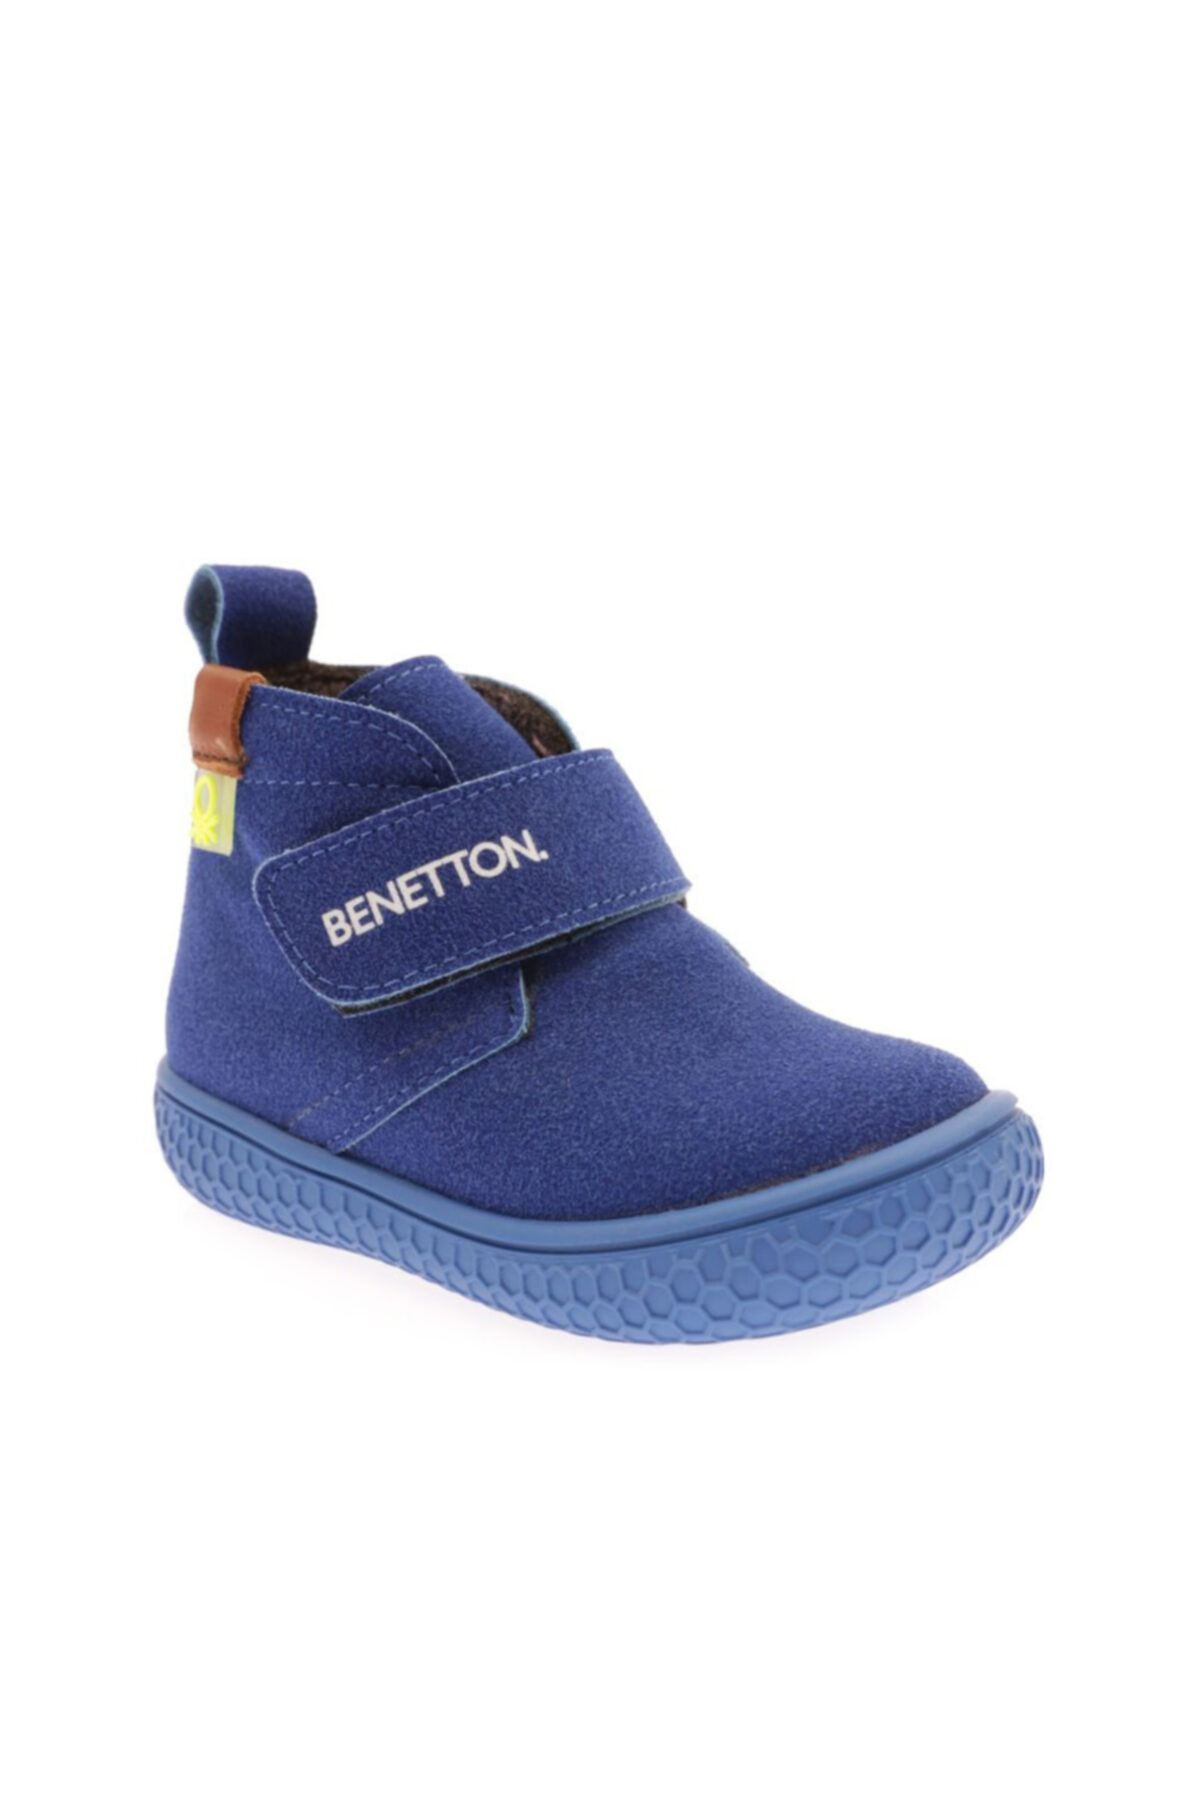 Benetton Mavi - Bn-30490 Çocuk Spor Ayakkabı